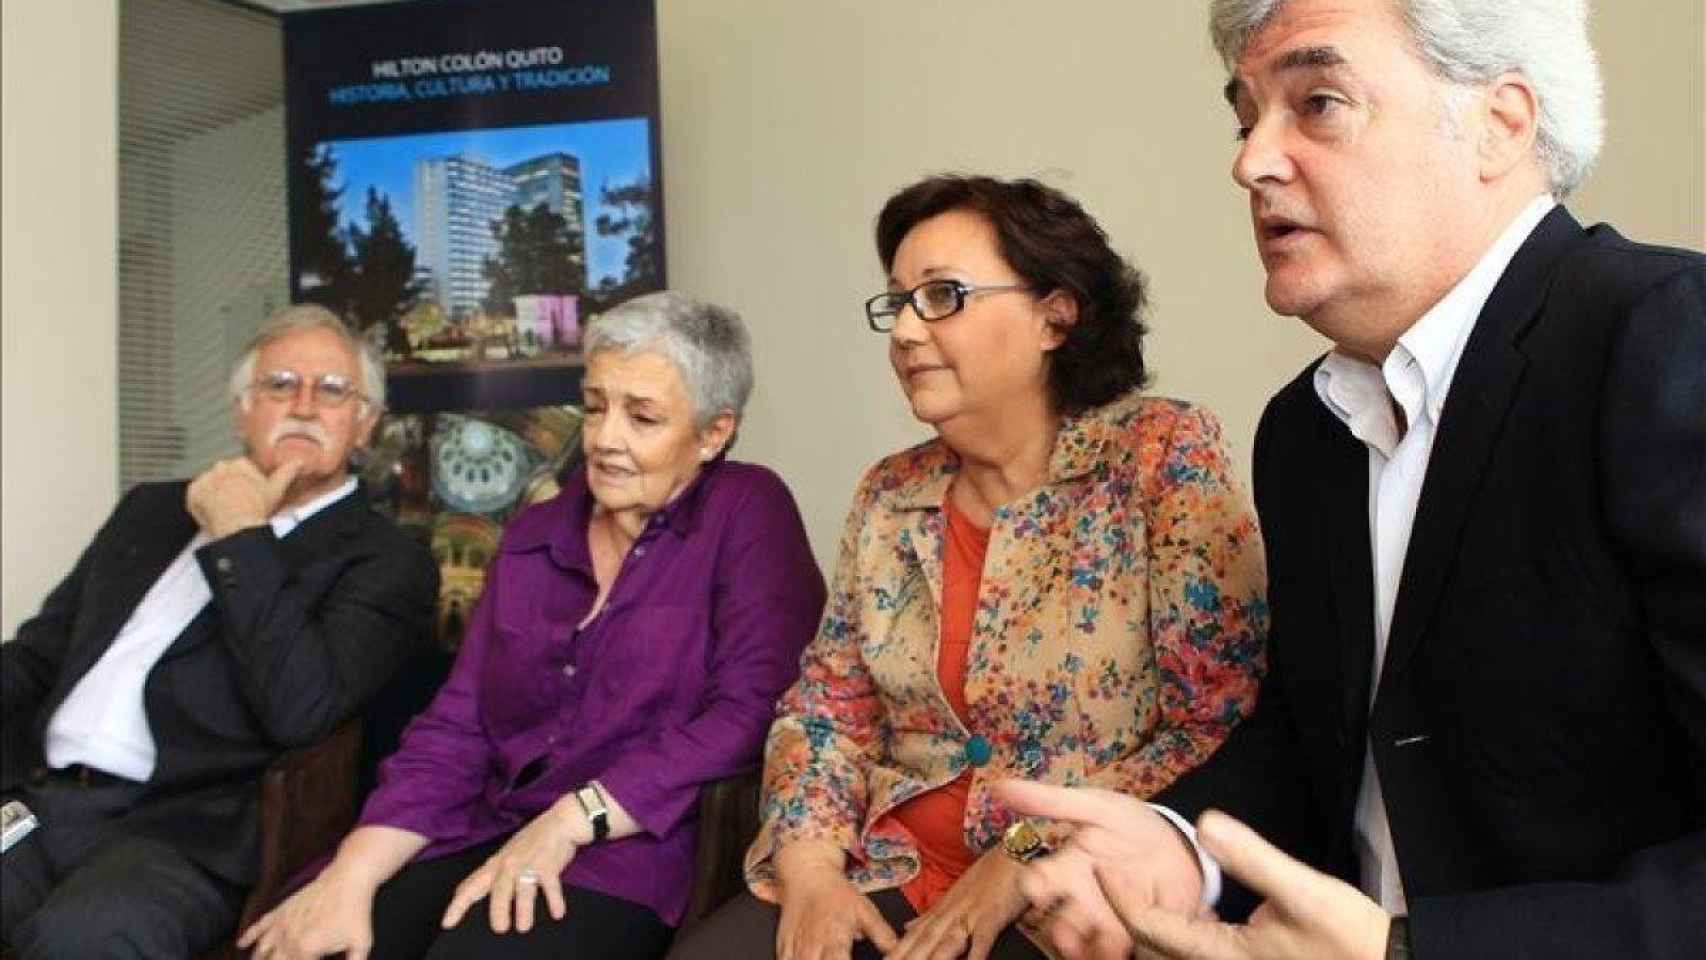 Los cuatro integrantes de El Consorcio, Iñaki, Amaya, Estíbaliz Uranga y Carlos Zubiaga / EFE